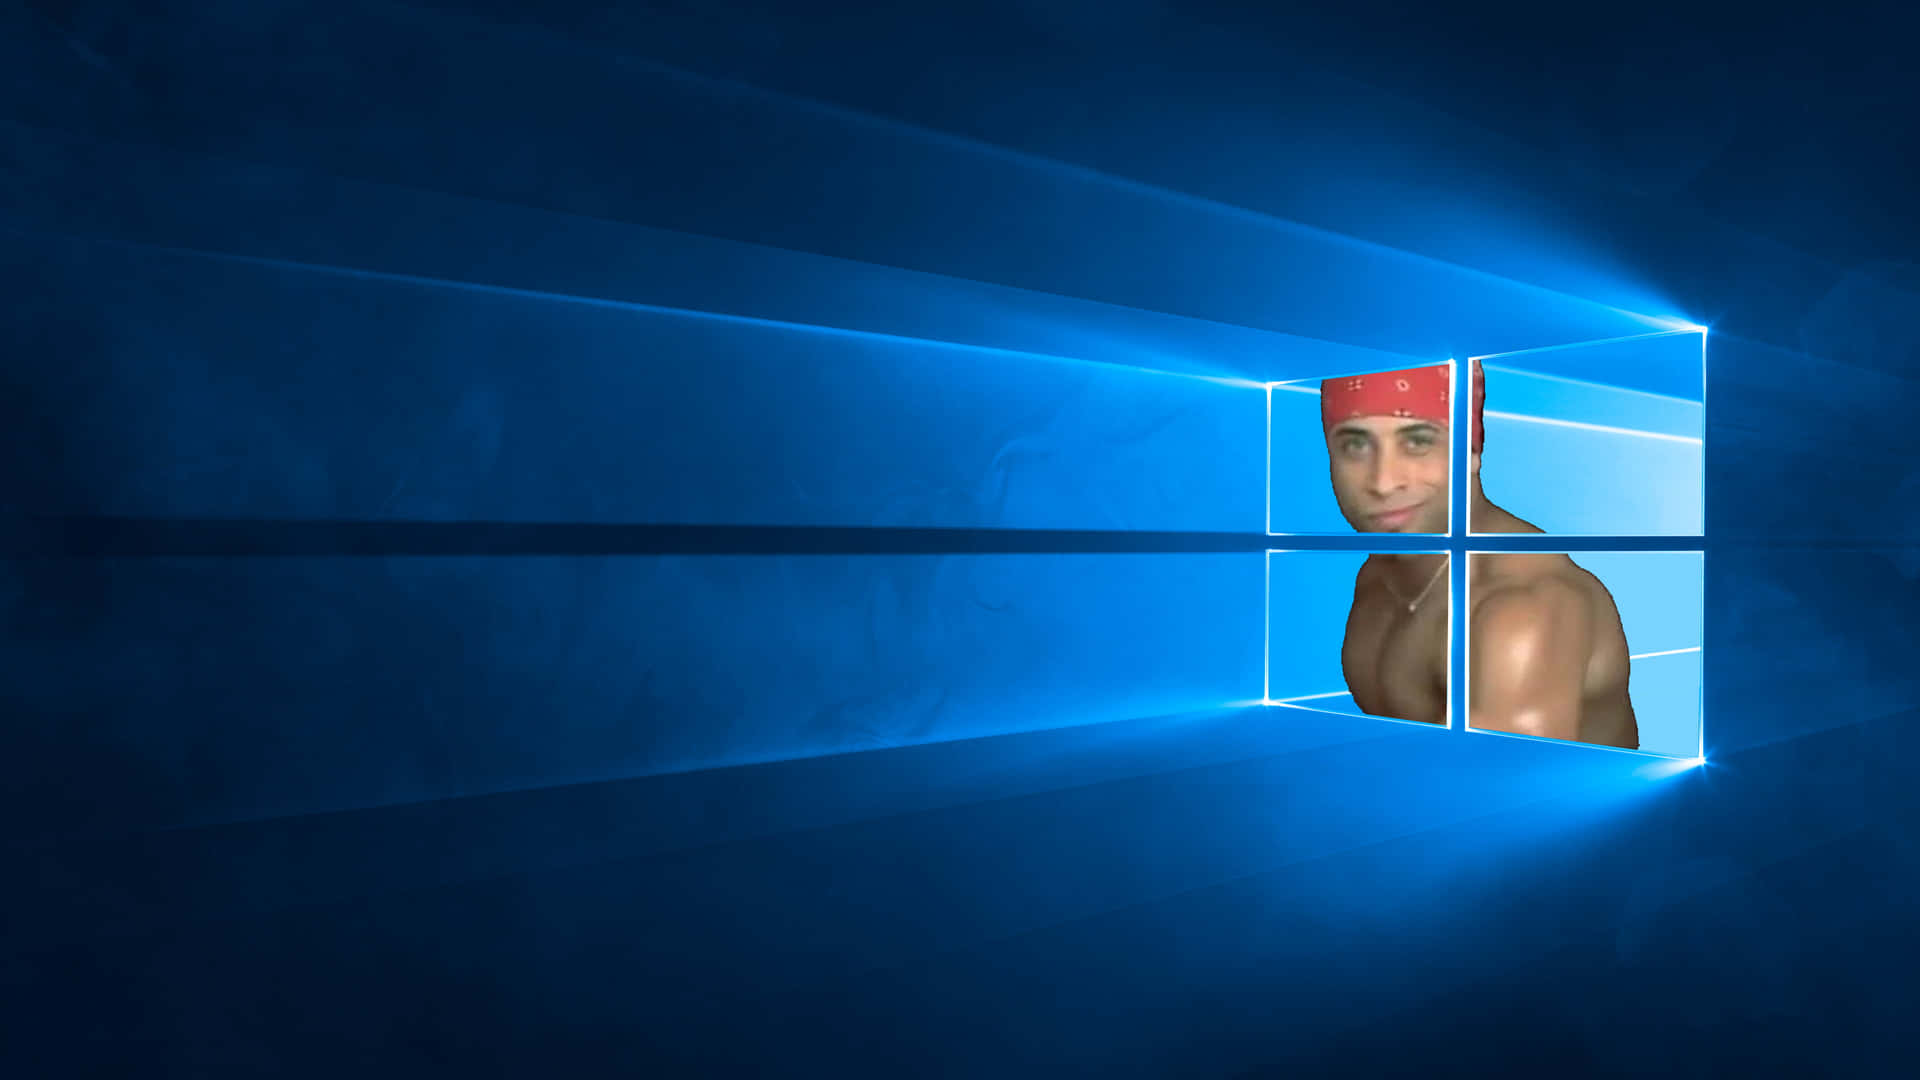 Imagende Meme De Un Boxeador En Windows 10.